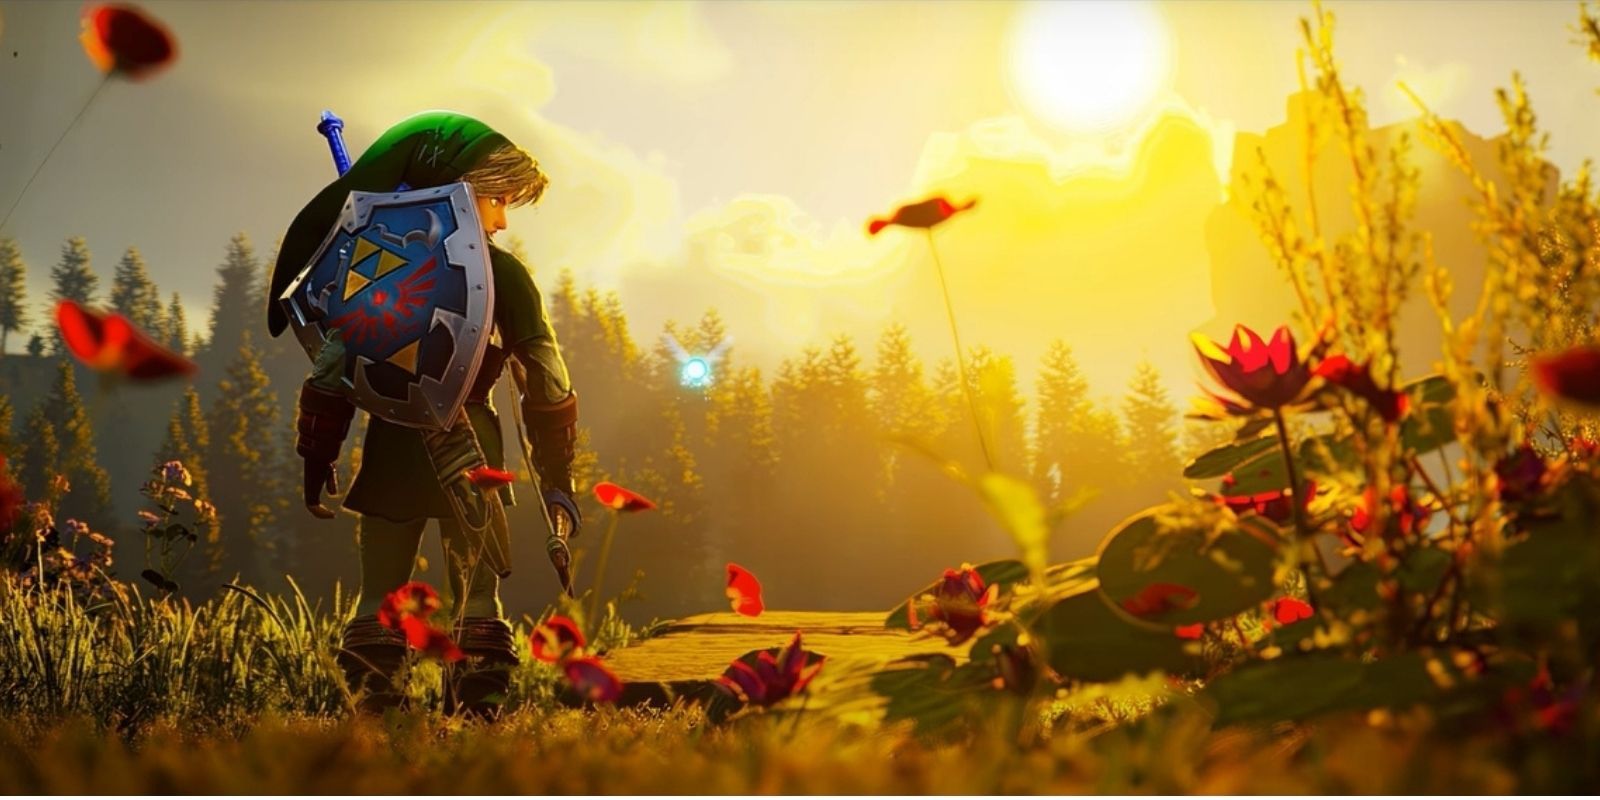 Zelda OoT UE4 Fan Remake Releases Stunning Update